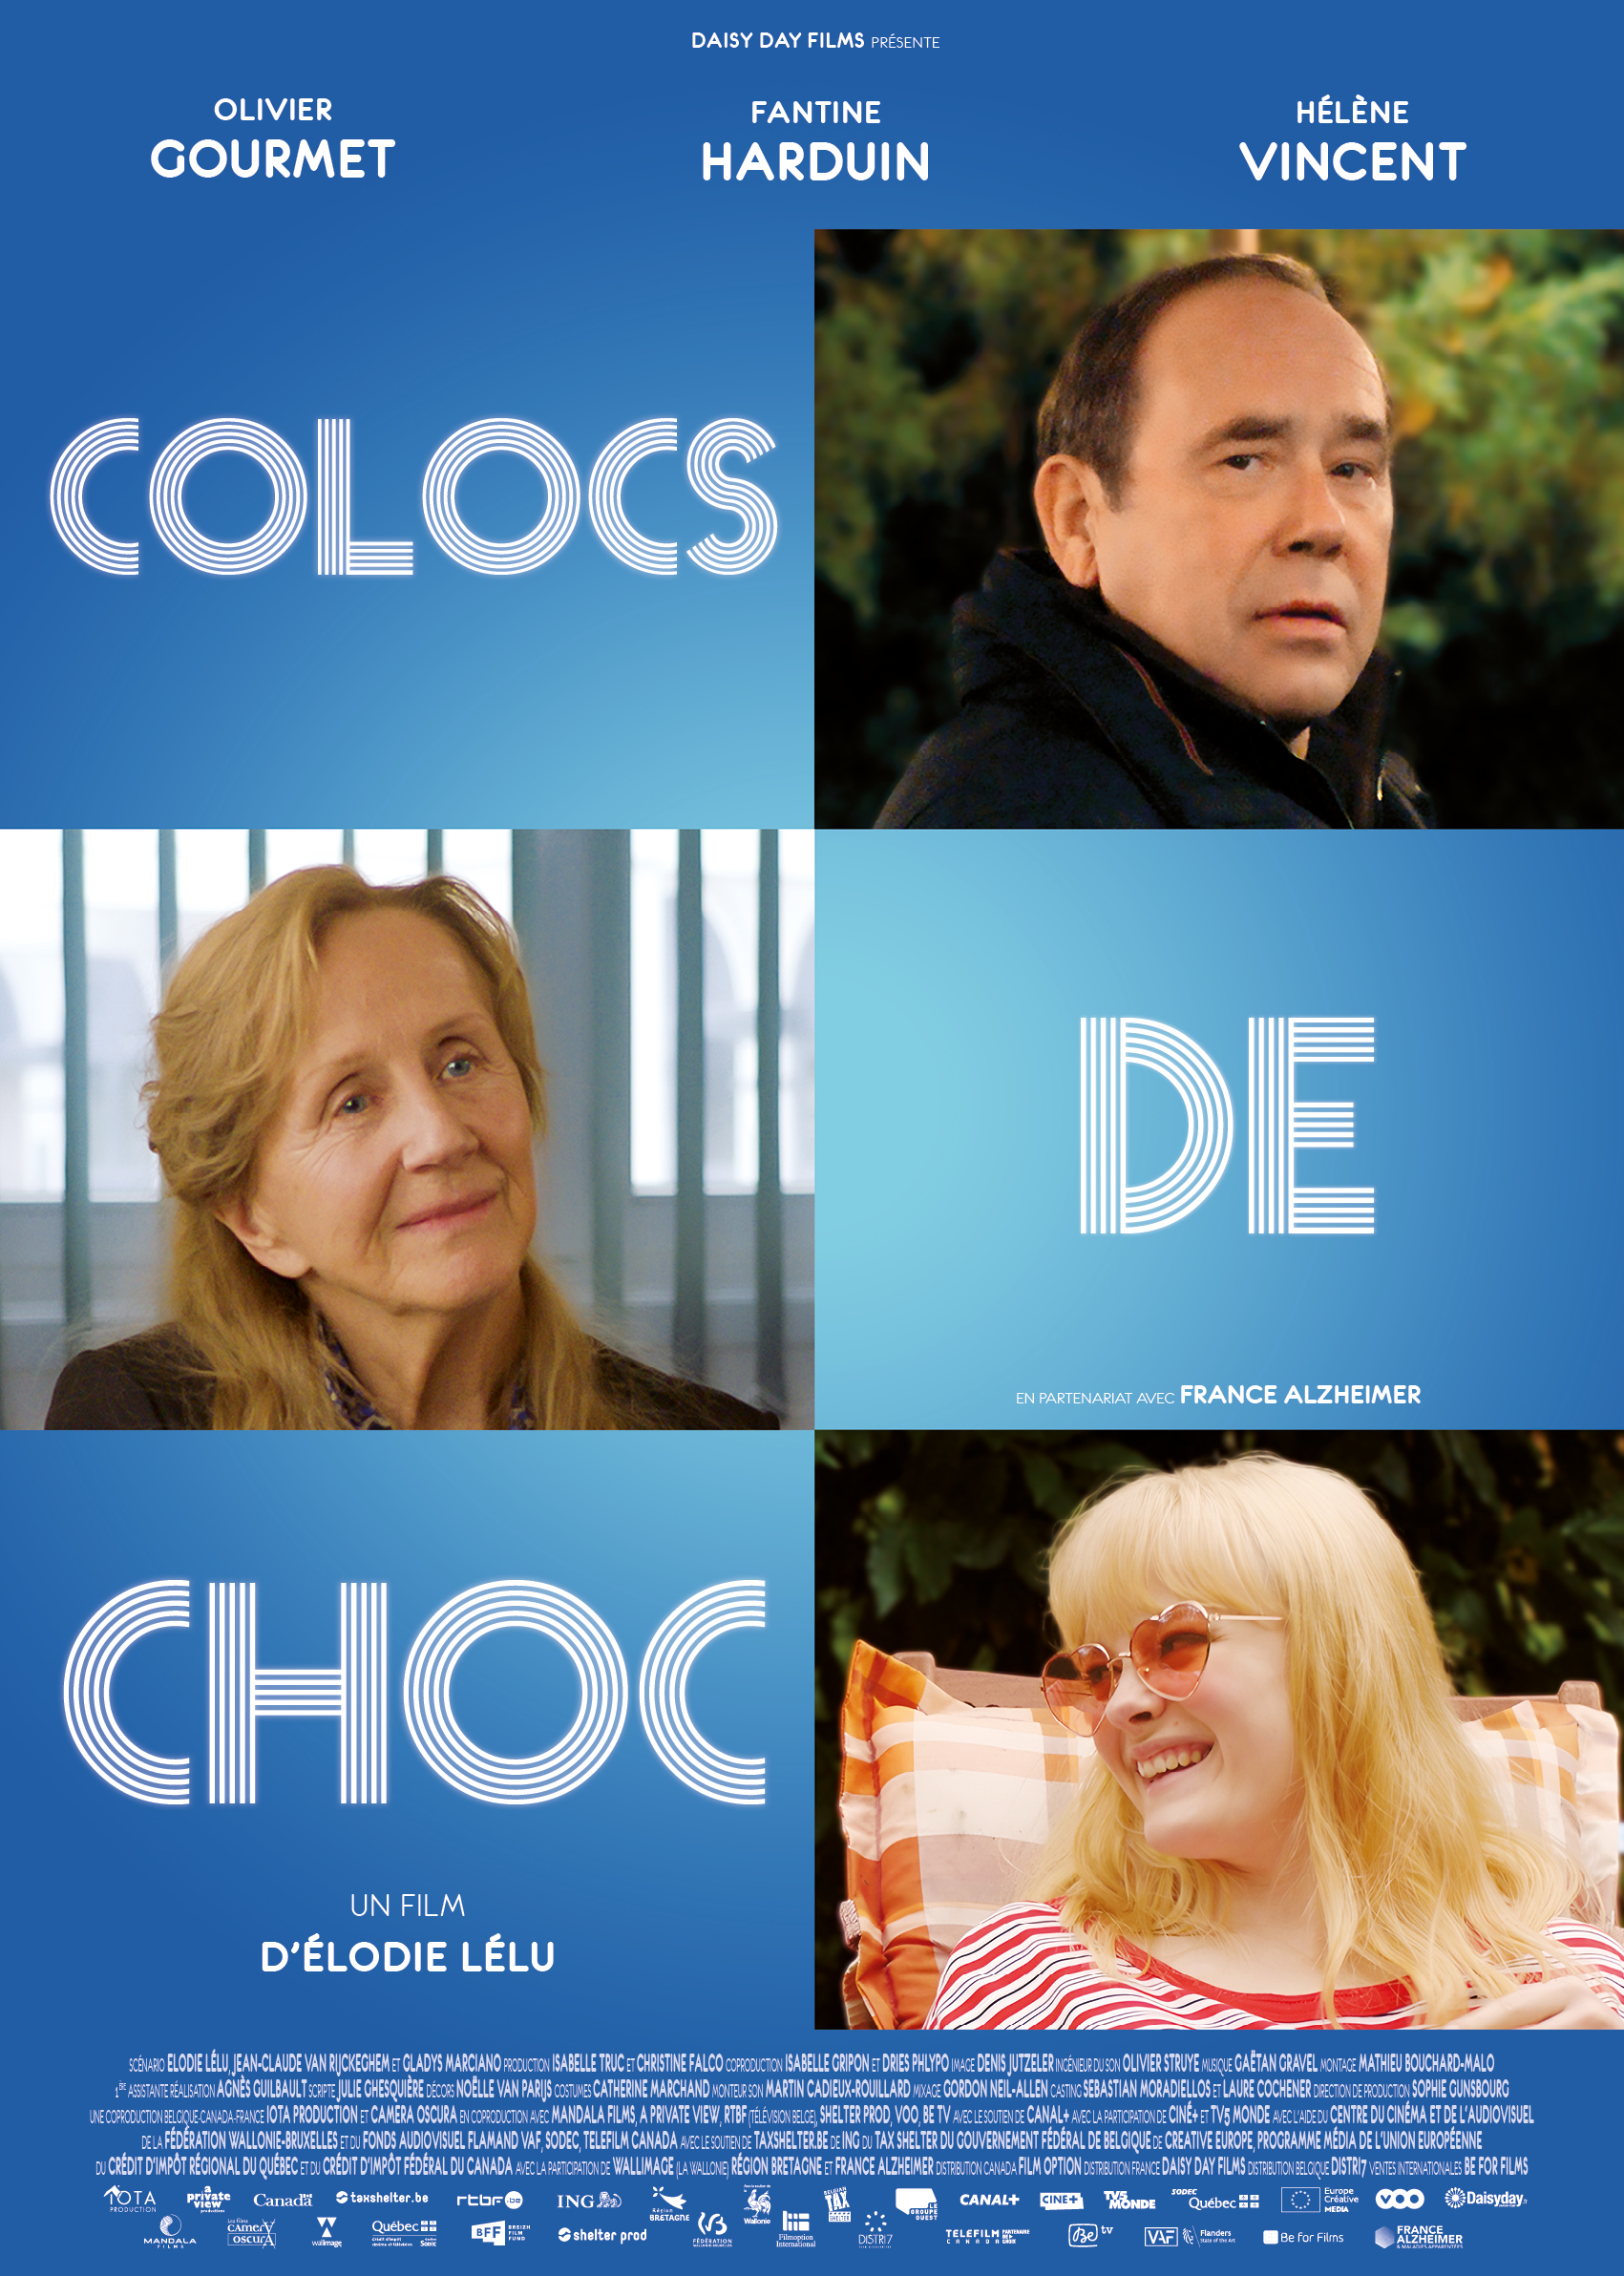 COLOCS DE CHOC daisyday films